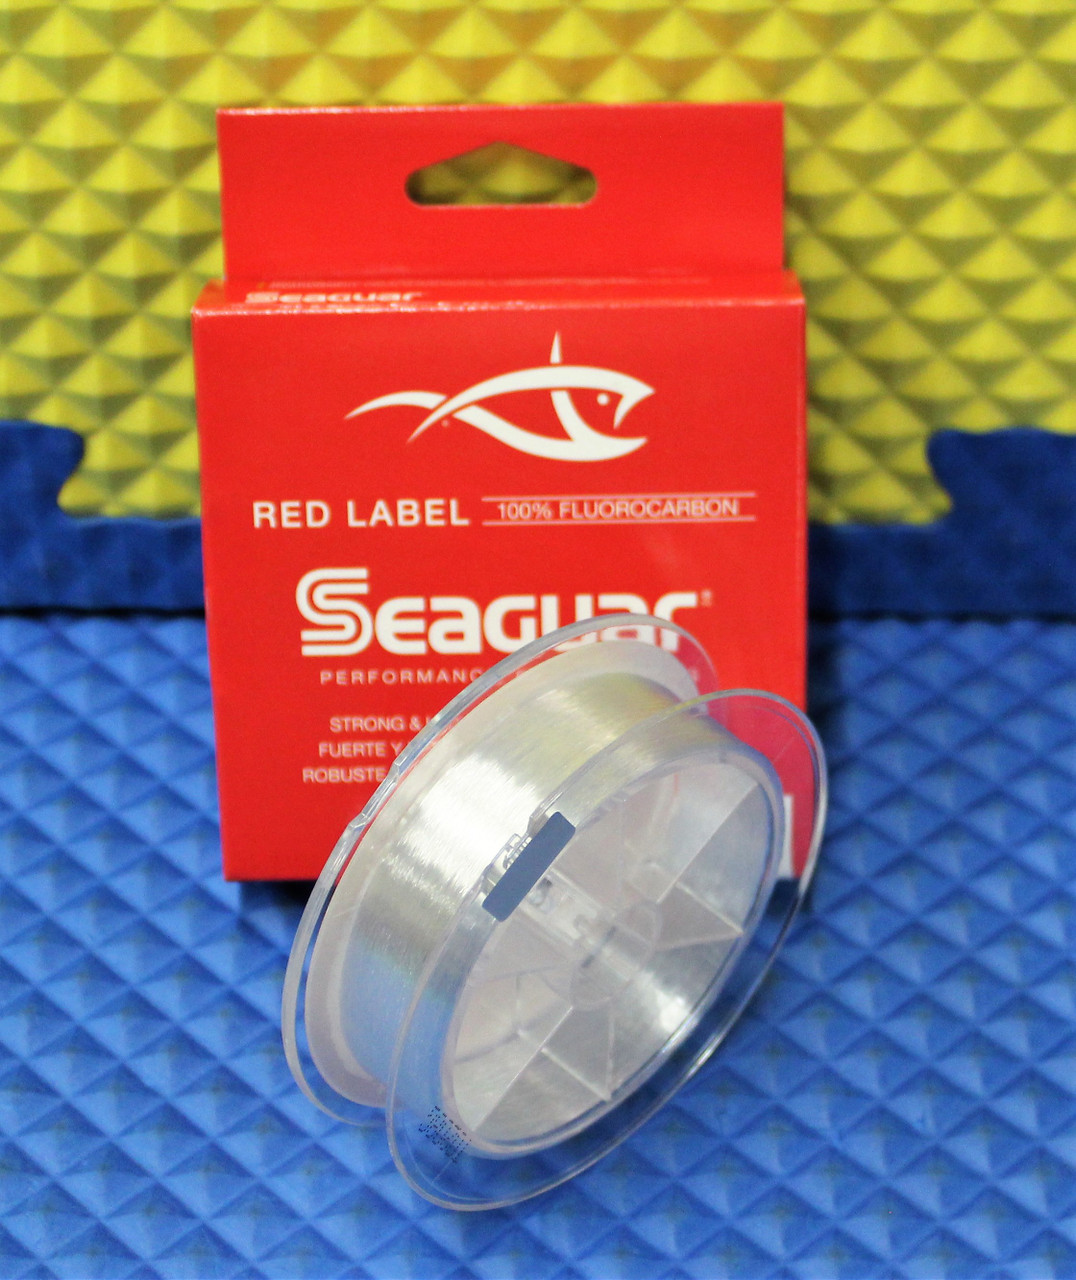 Seaguar Red Label Fluorocarbon Line 6 lb.